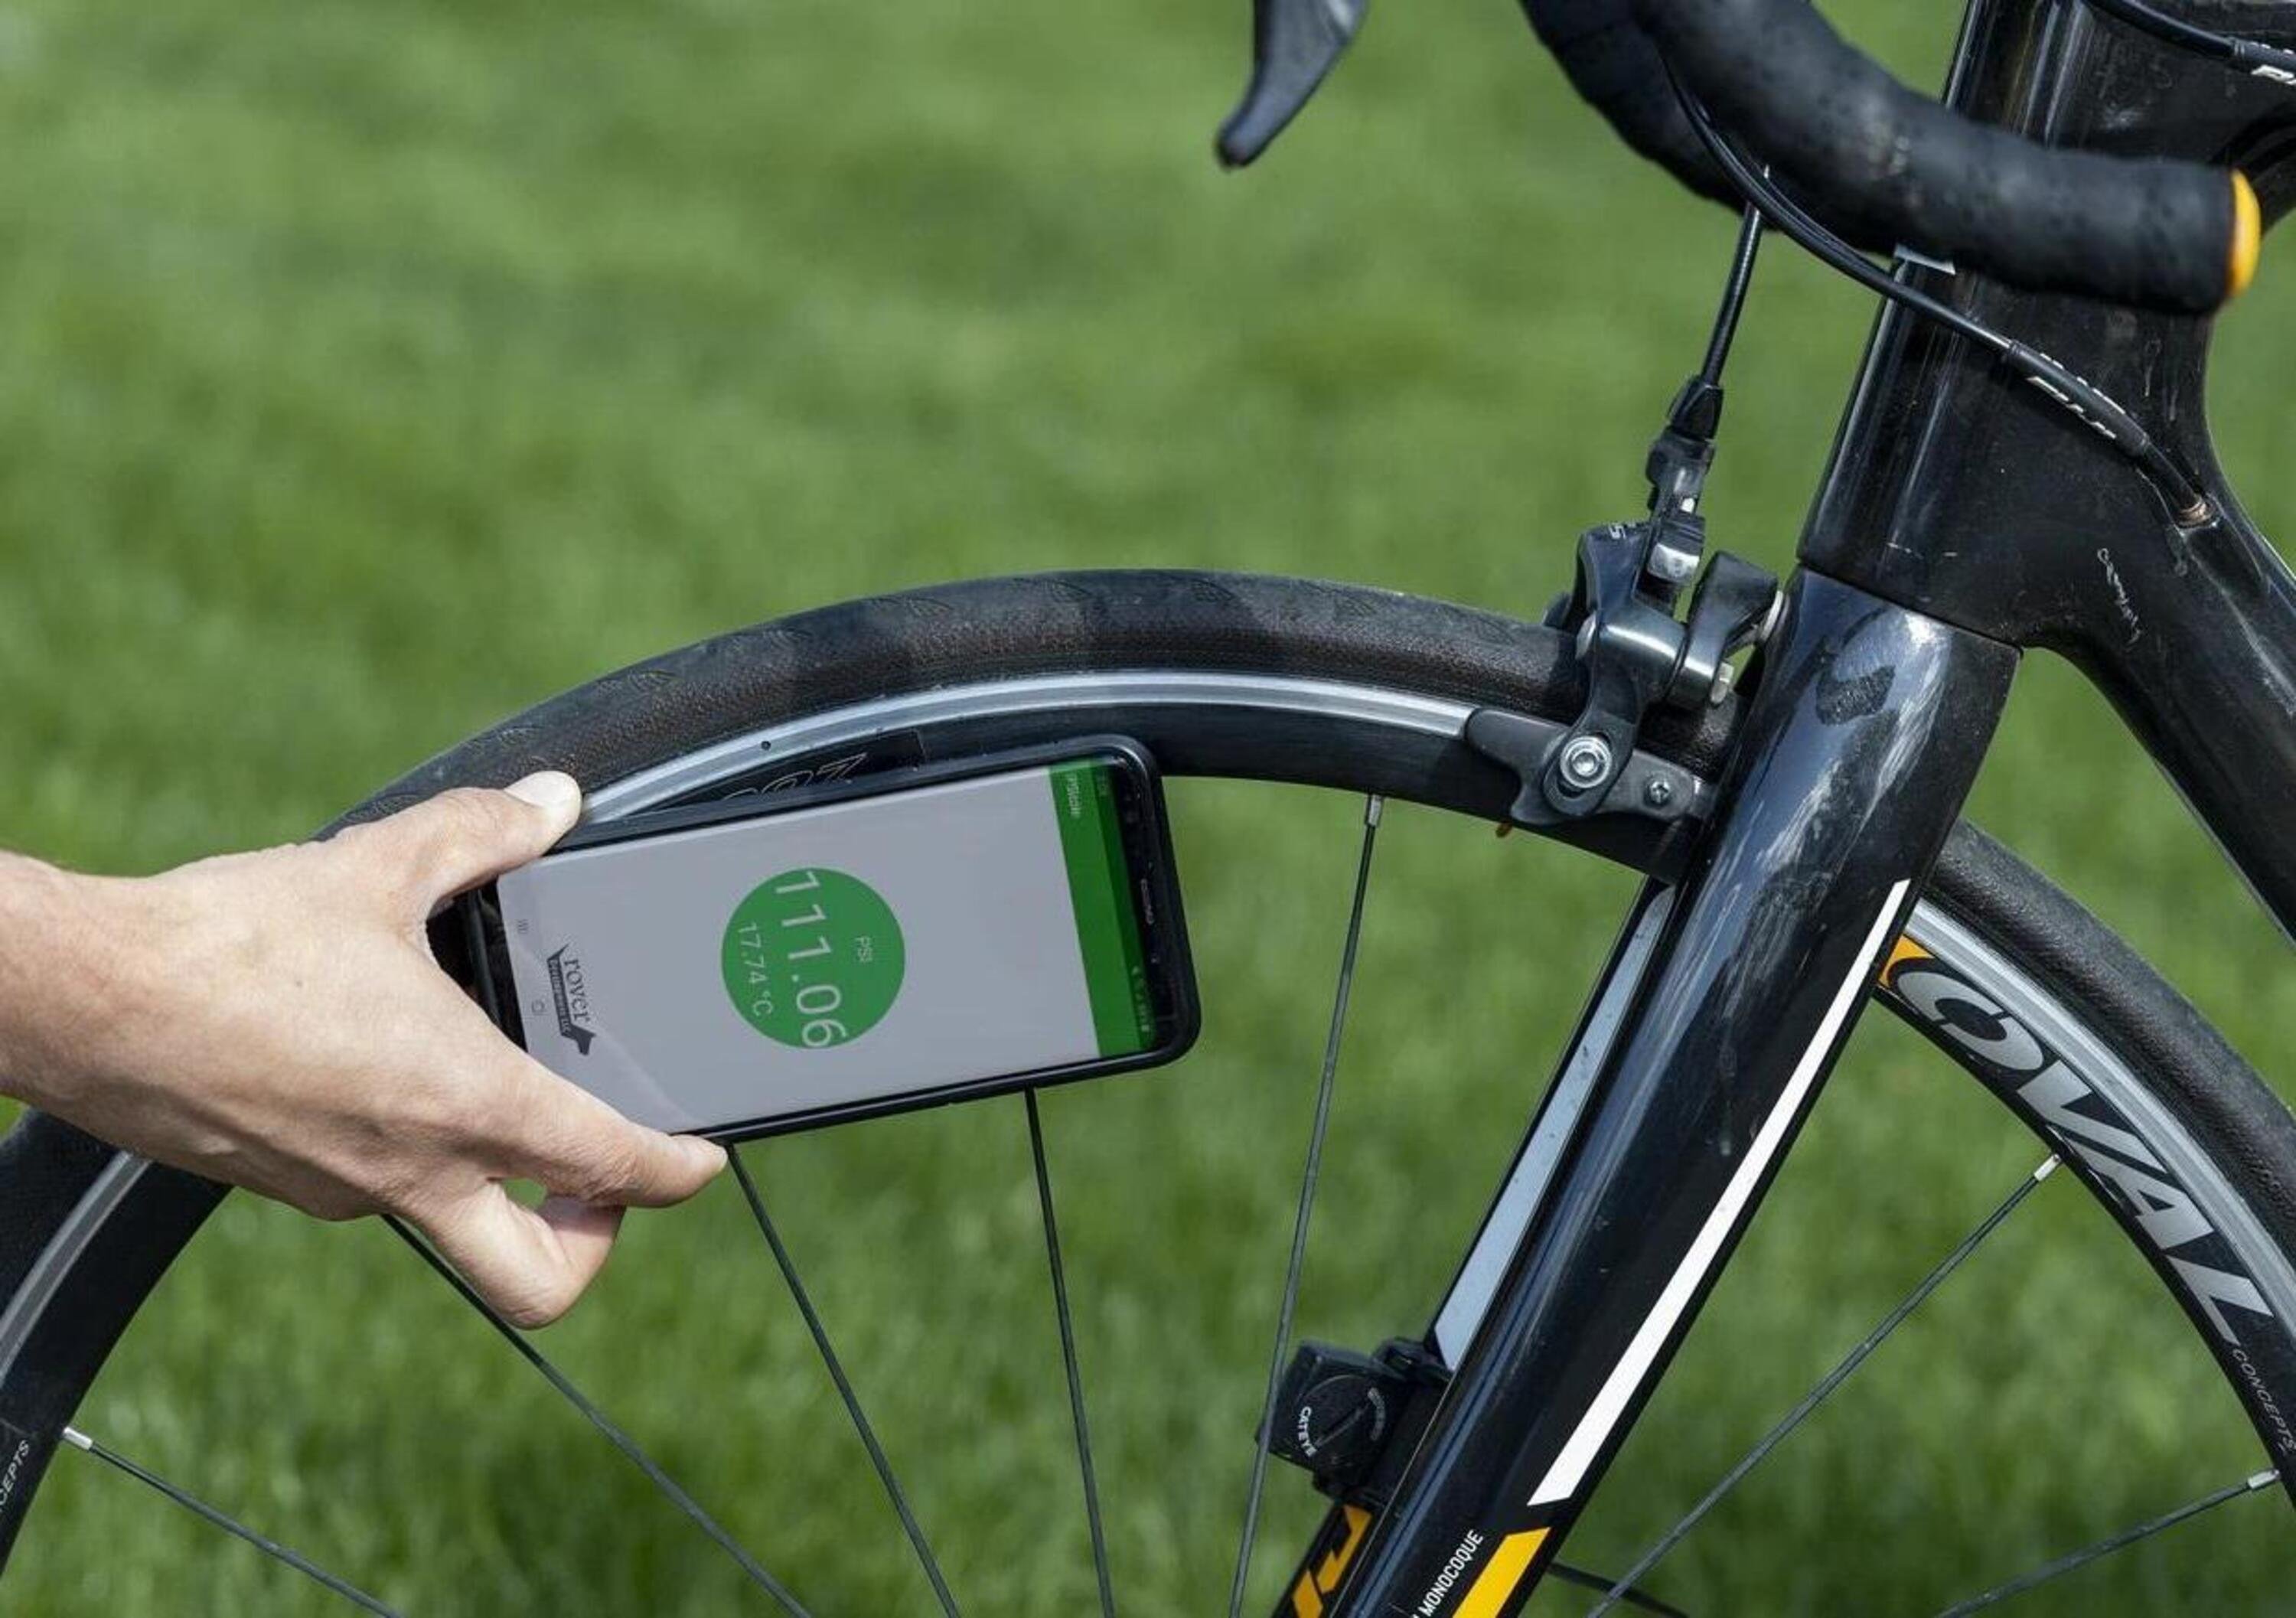 Controllare la pressione delle gomme della bici con lo smartphone